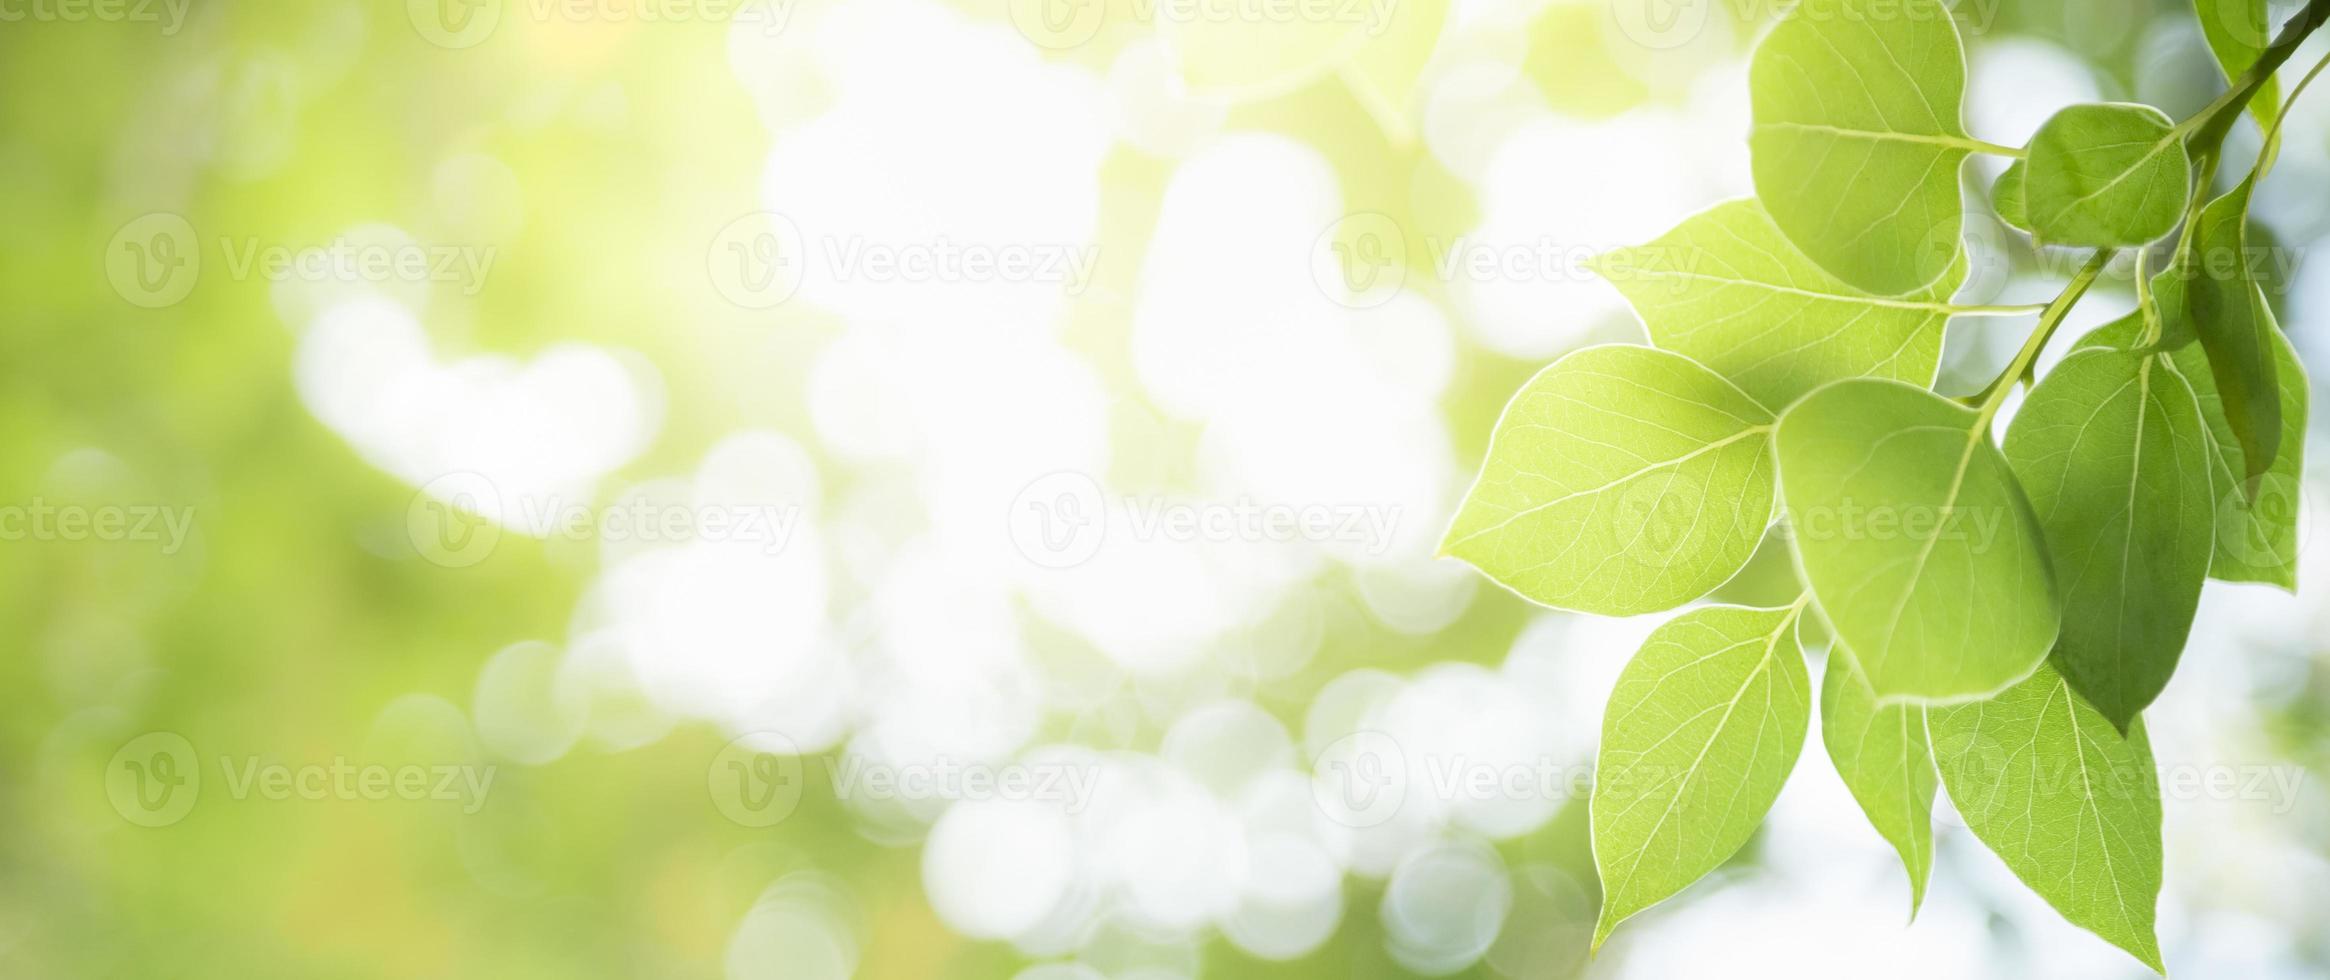 close-up van prachtige natuur weergave groen blad op wazig groen achtergrond in tuin met kopie ruimte gebruiken als achtergrond voorblad concept. foto